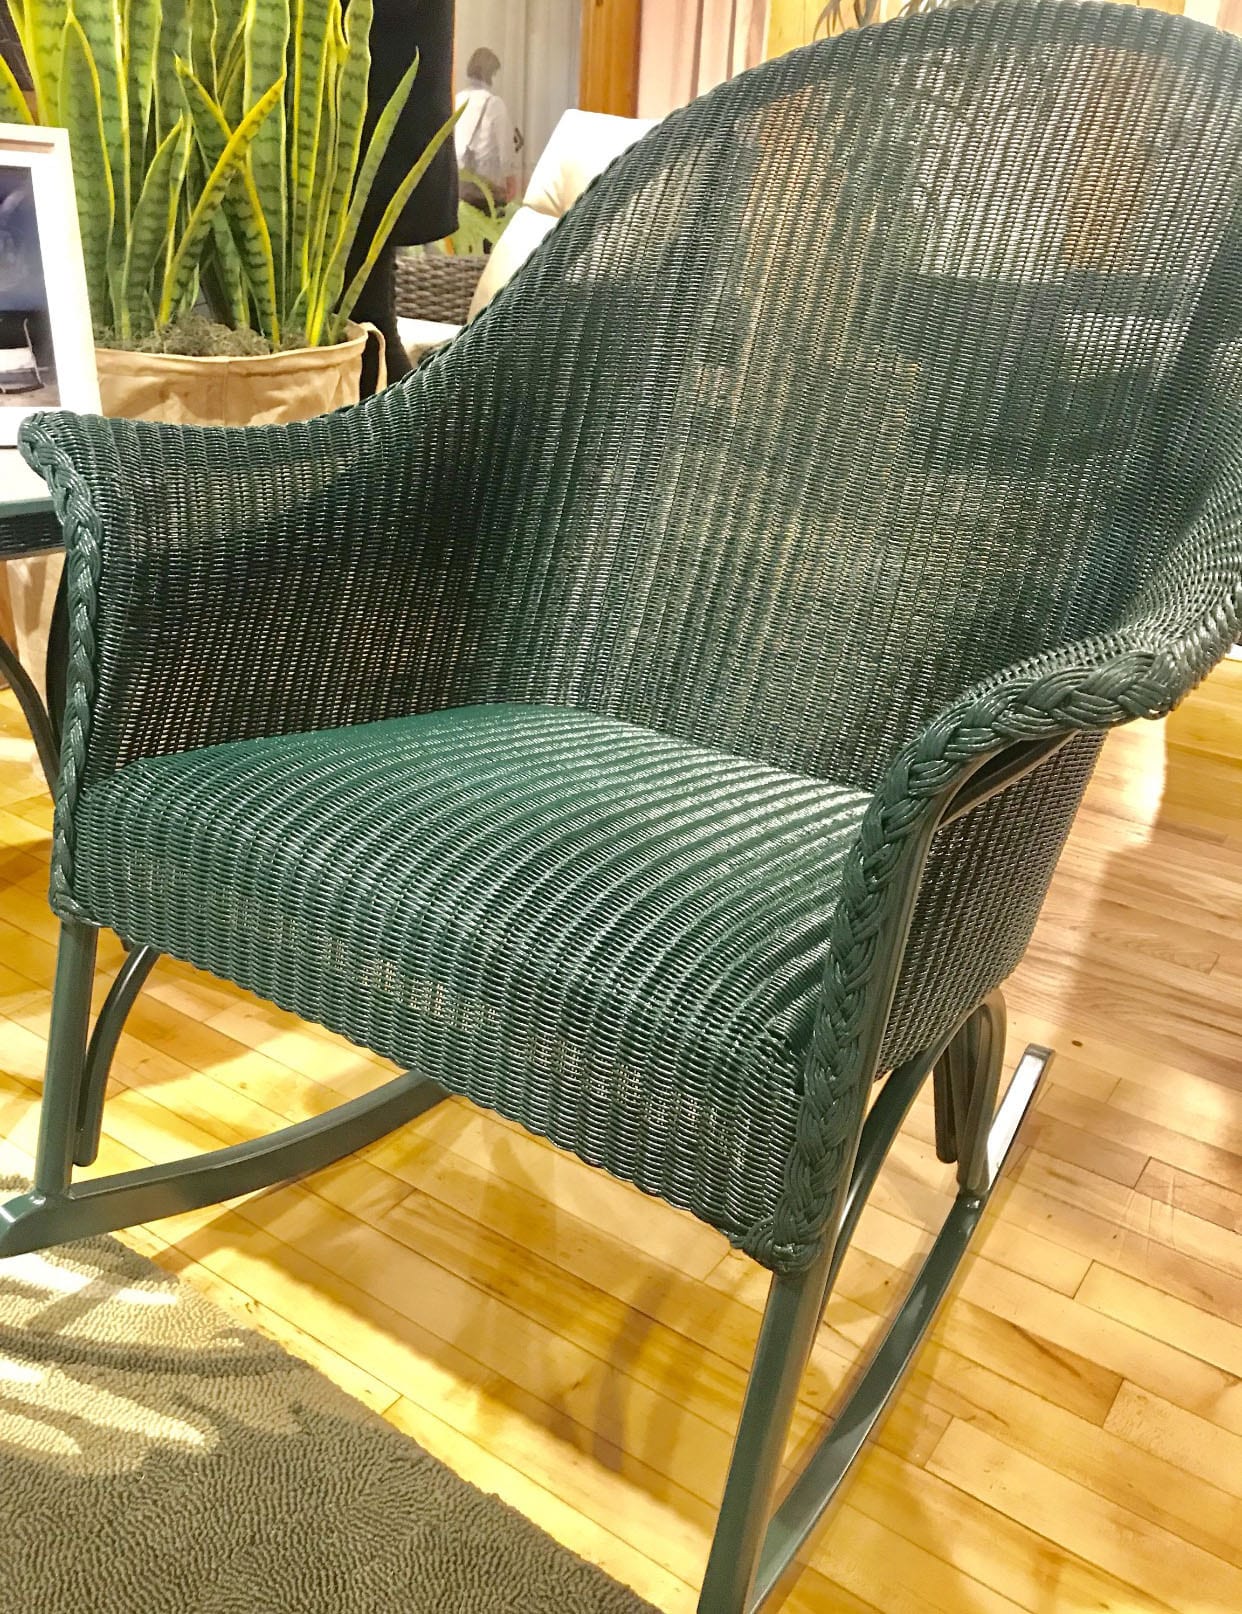 Green rattan rocking chair by Lloyd Flanders